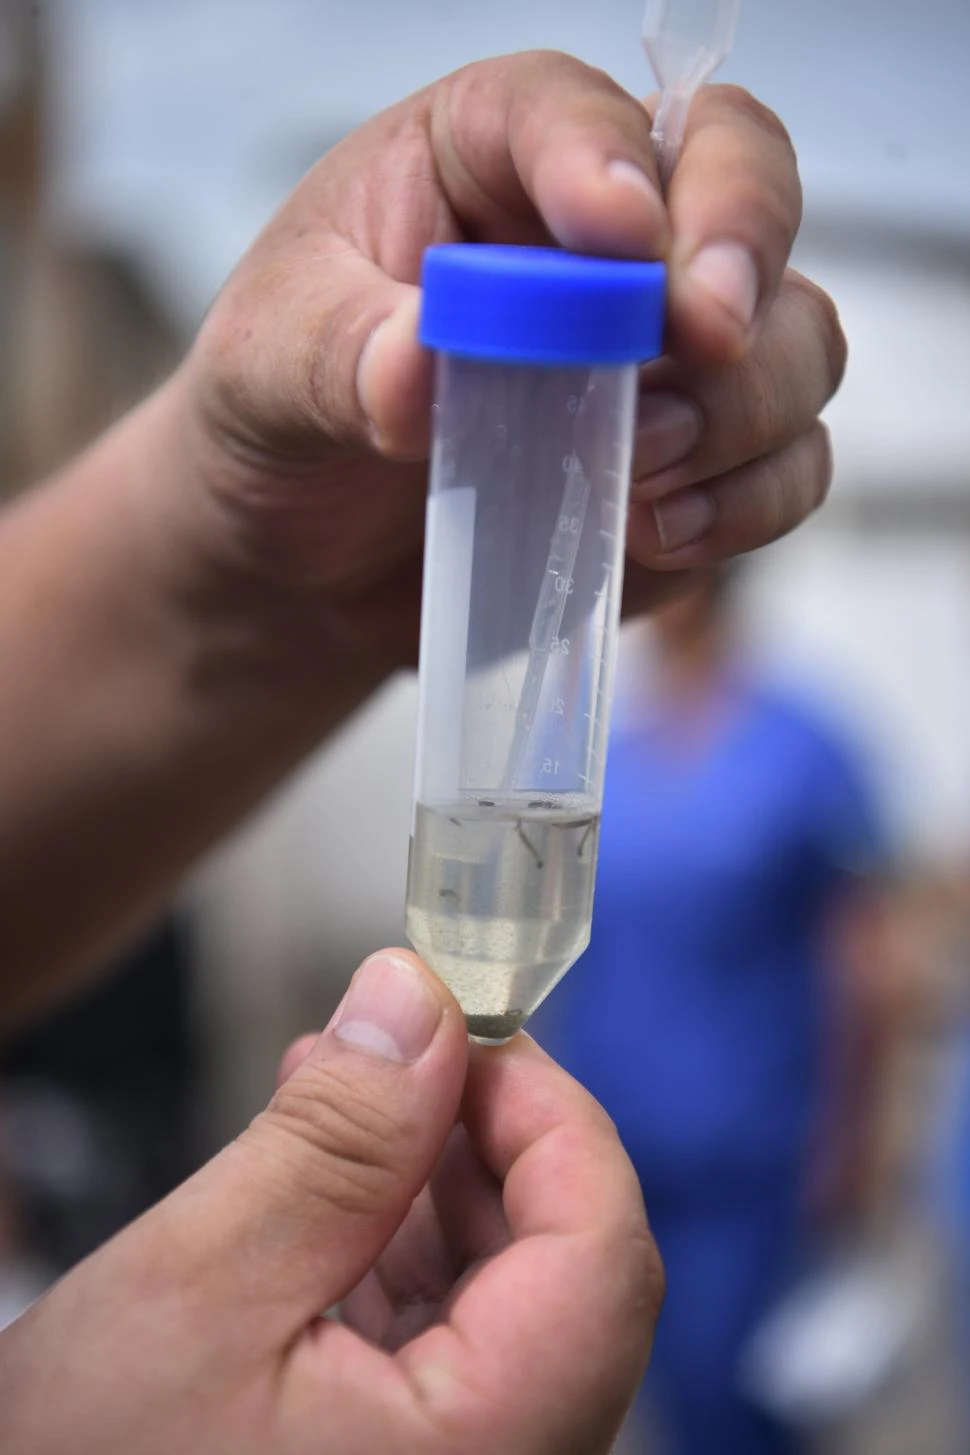 Epidemia en Tucumán: El dengue fue como un veneno; le causó la muerte muy rápido